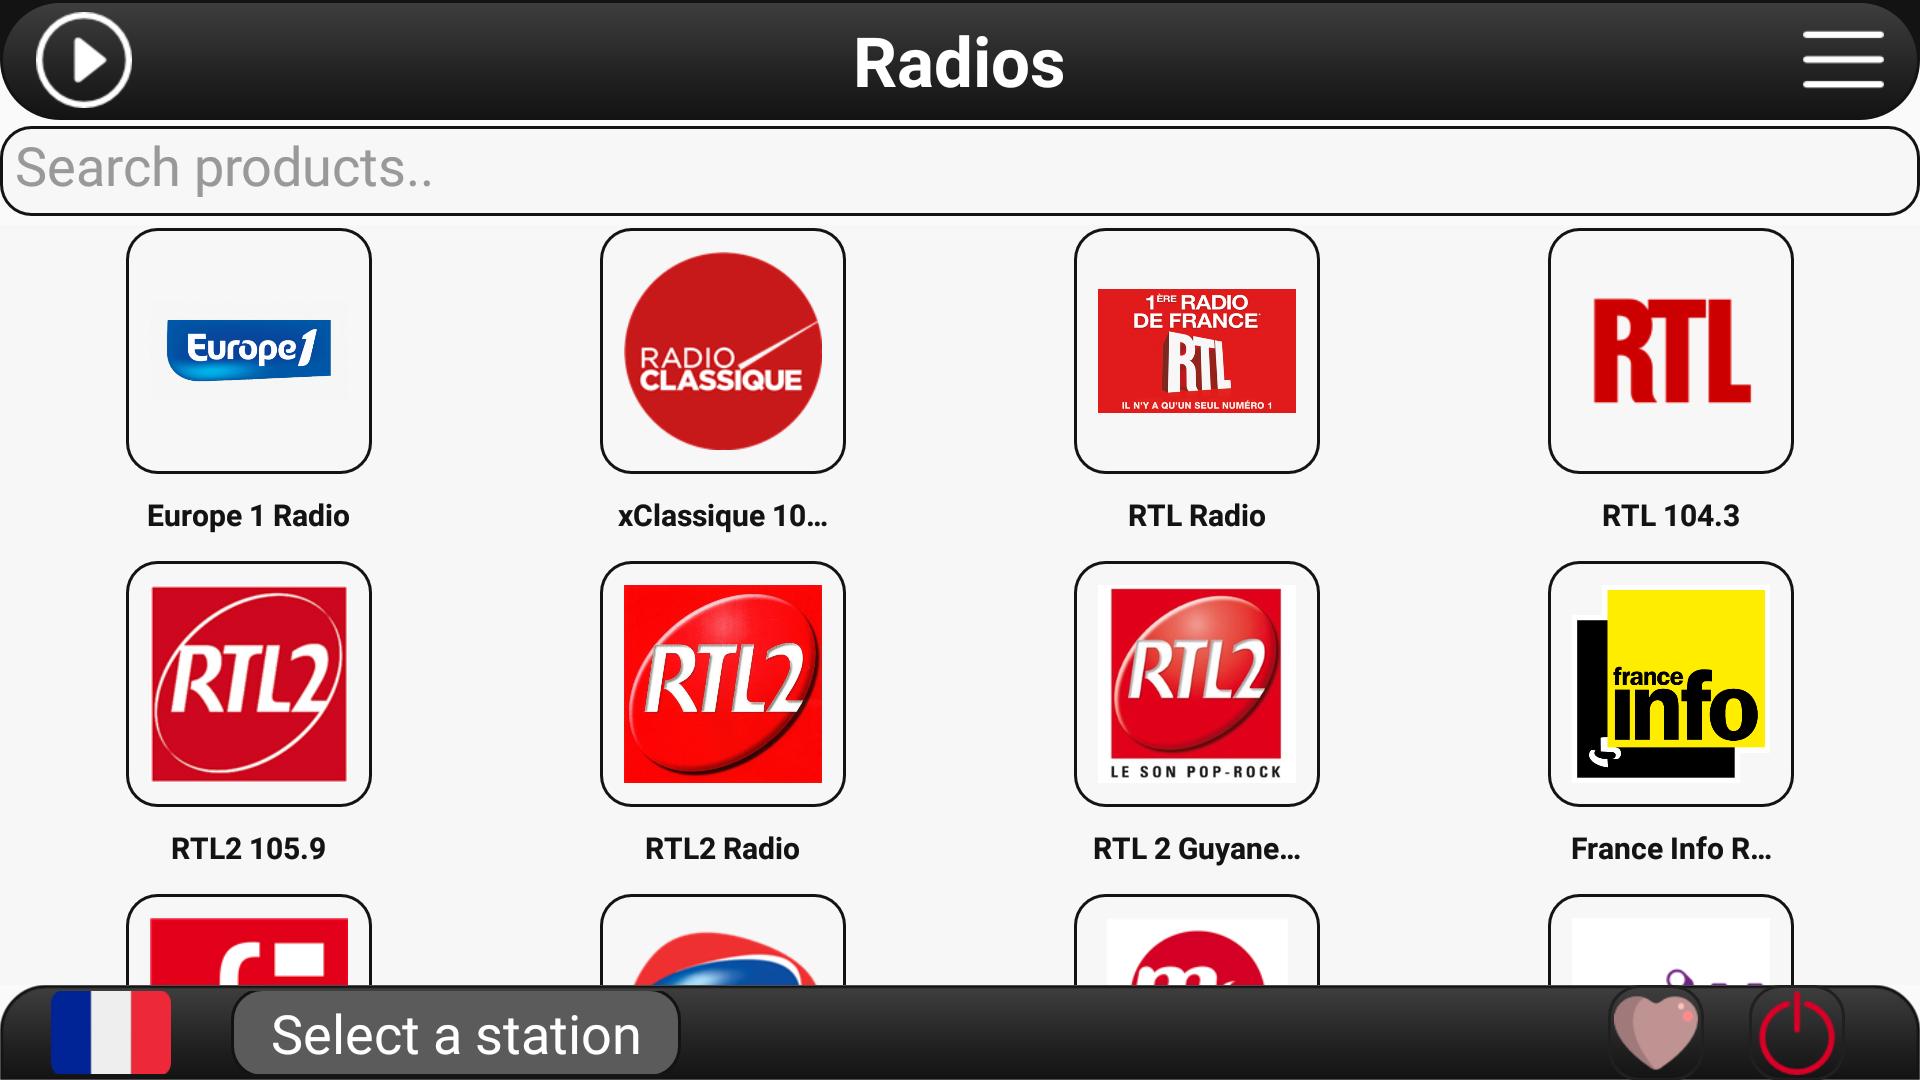 RTL радио. Радио богатырь ФМ. Radio Europe 1. Хф радио ФМ. Радио фм 70 х